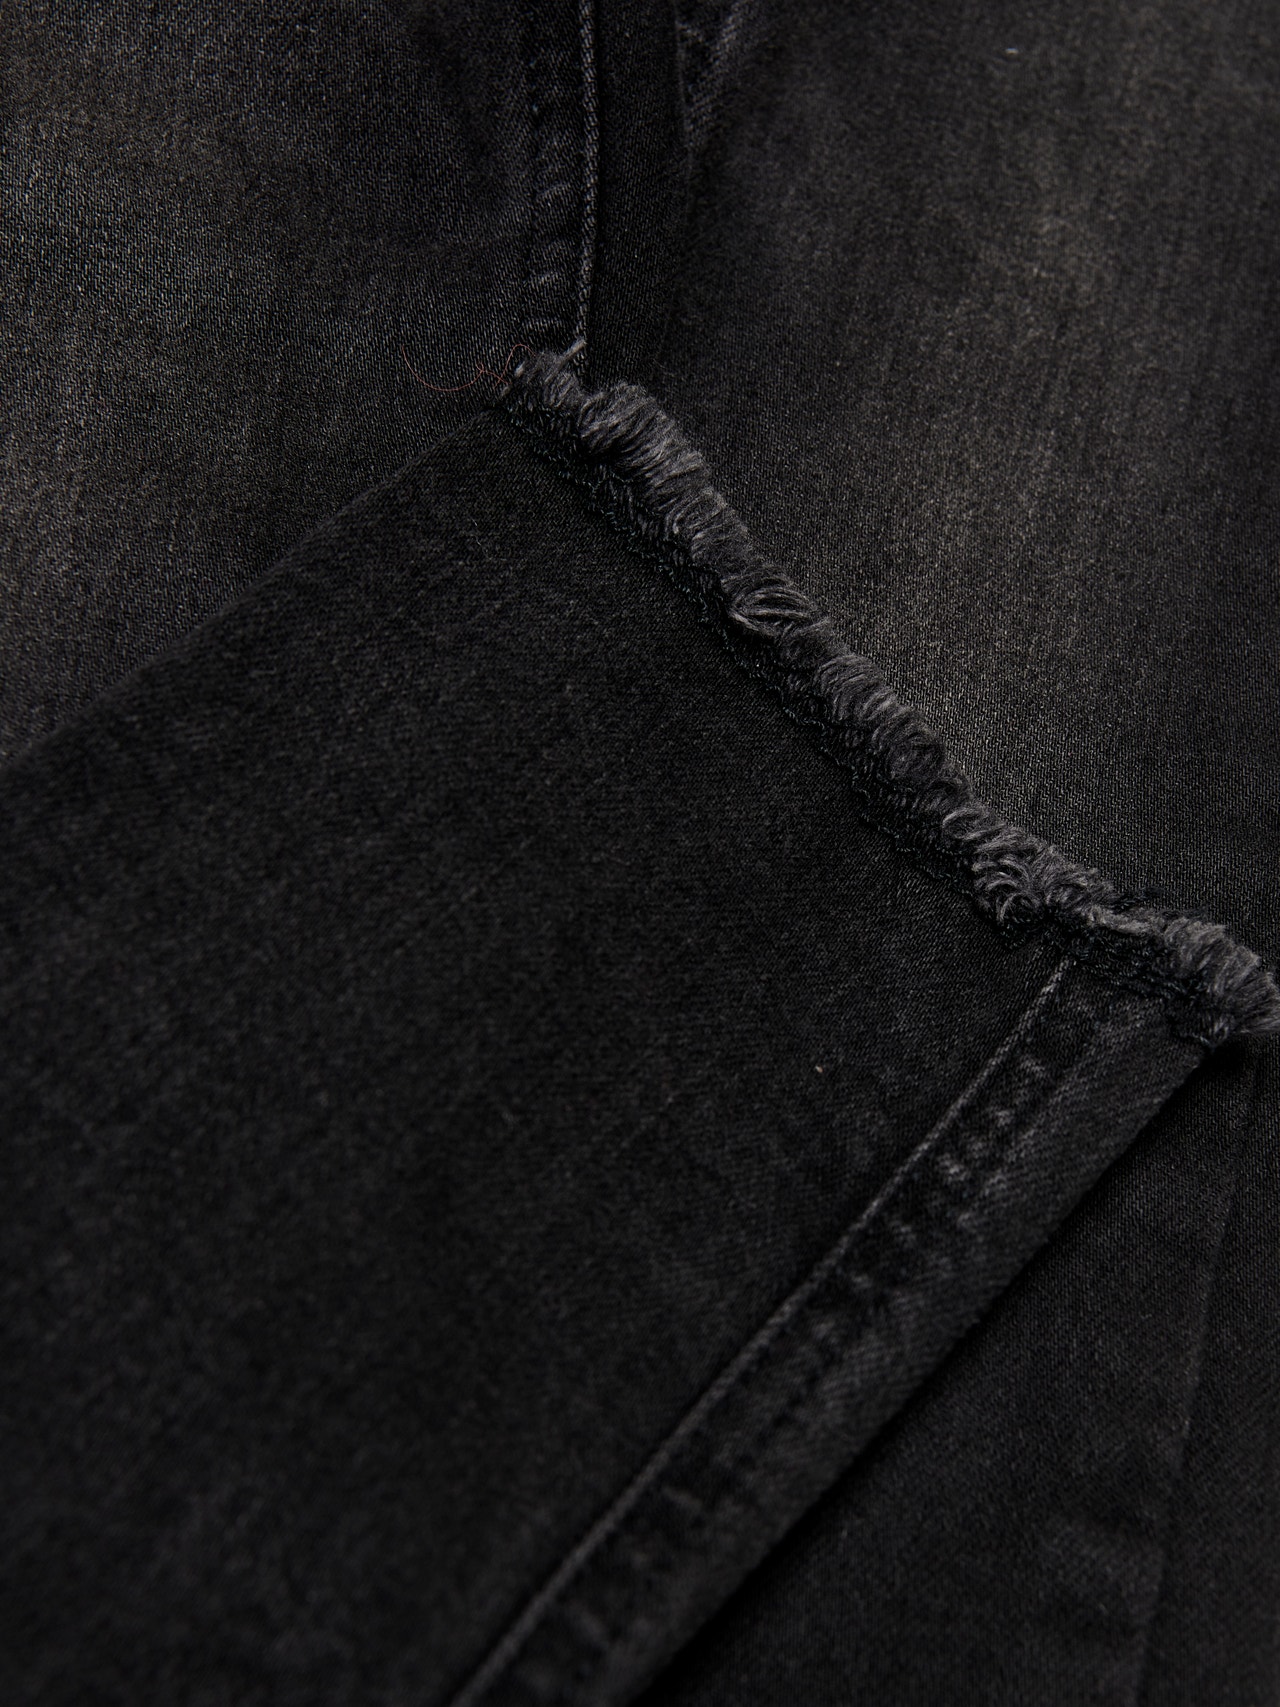 ONLY Jeans Skinny Fit -Black Denim - 15185446